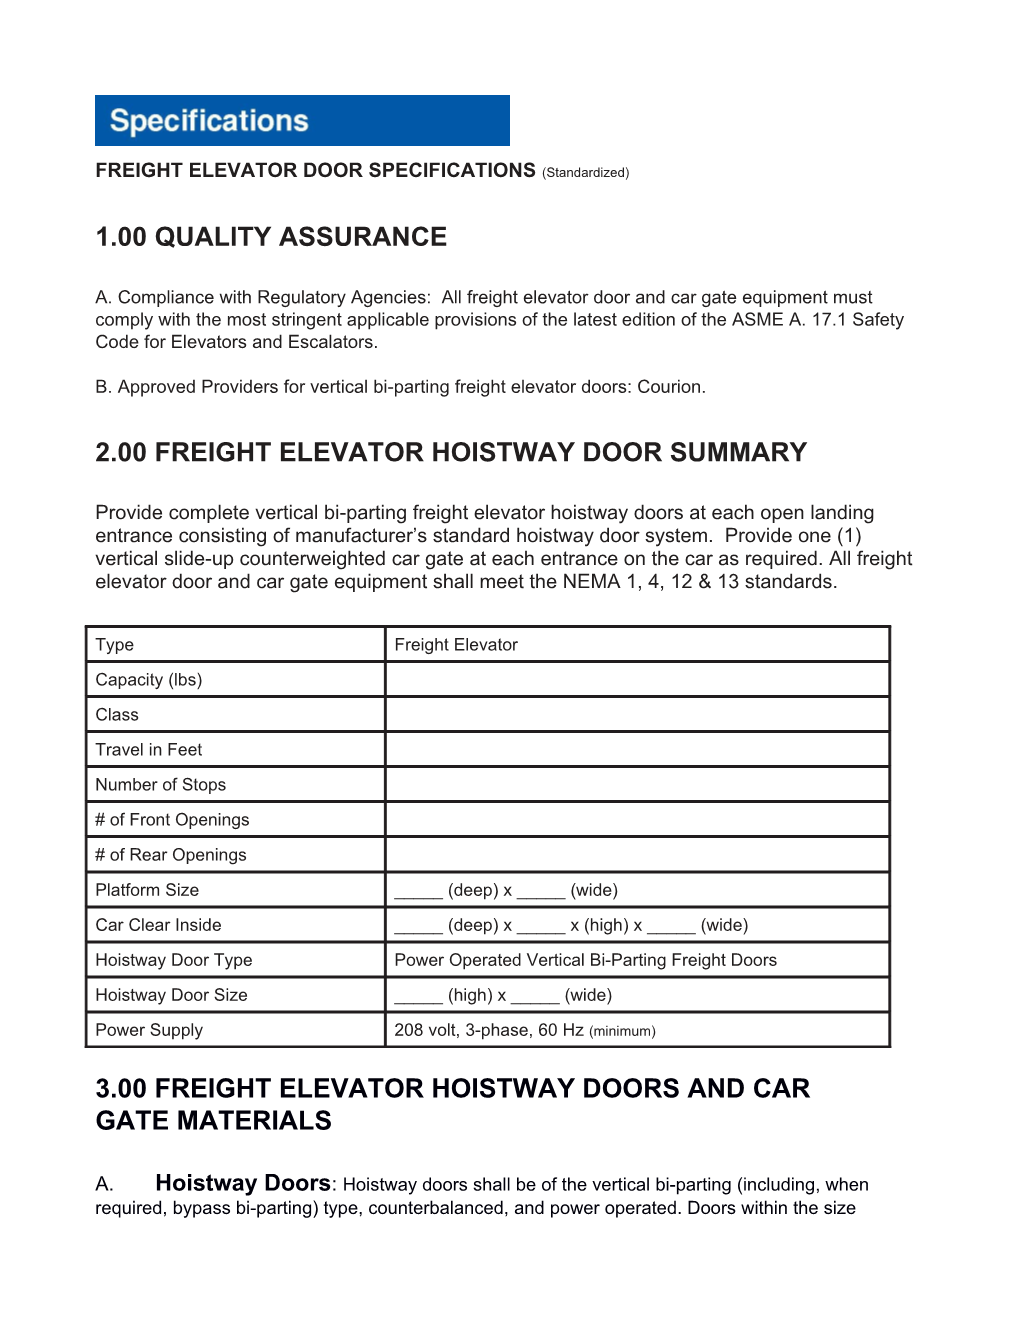 FREIGHT ELEVATOR DOOR SPECIFICATIONS (Standardized)